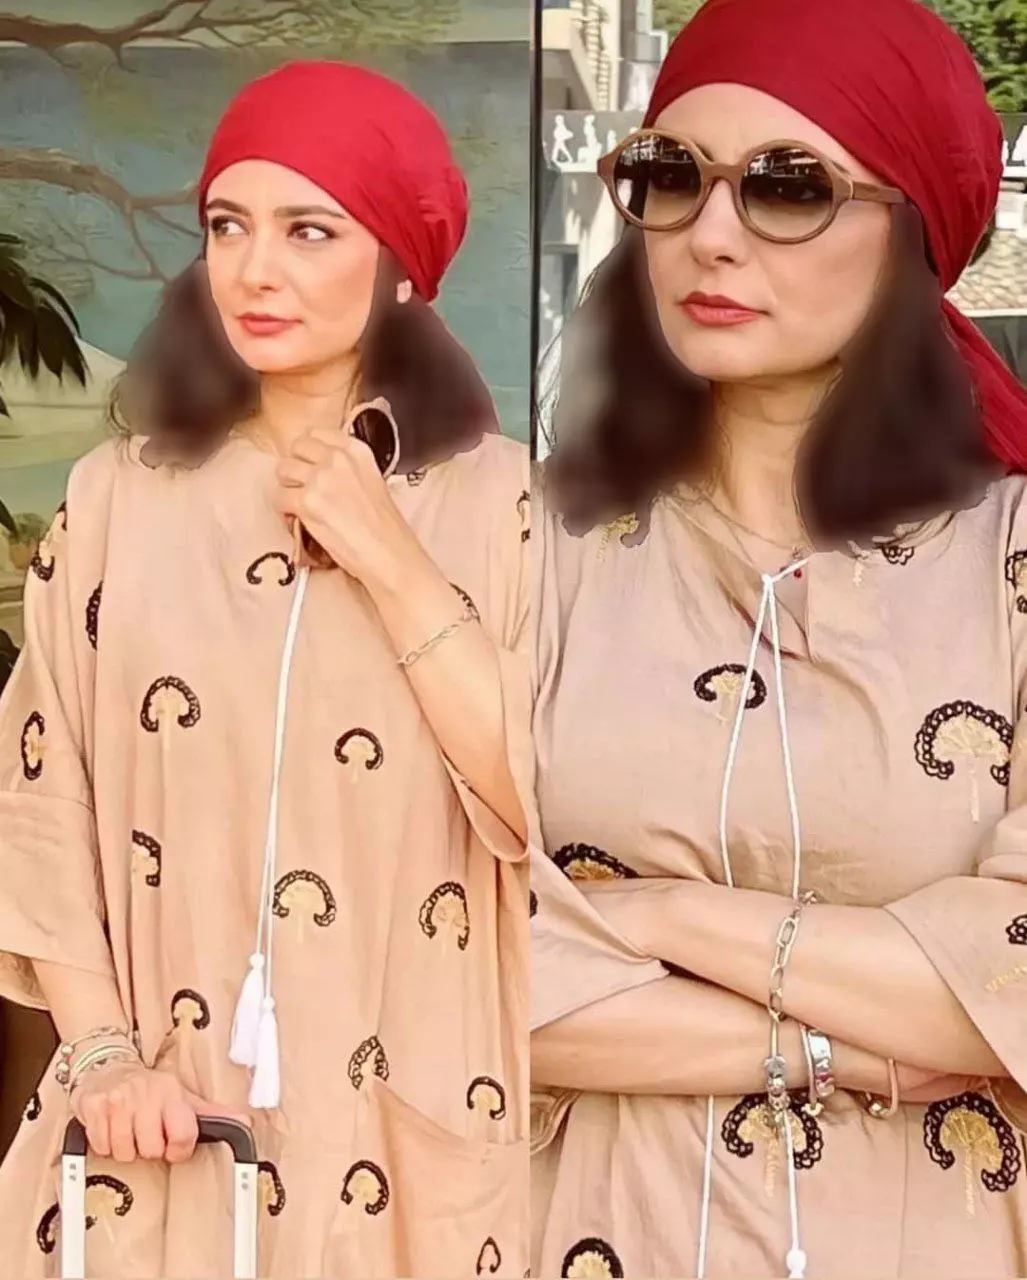 تصویری جالب و دیدنی از لیندا کیانی بازیگر مطرح ایرانی در خارج از کشور منتشر شد که تیپ او مورد توجه کاربران قرار گرفت.